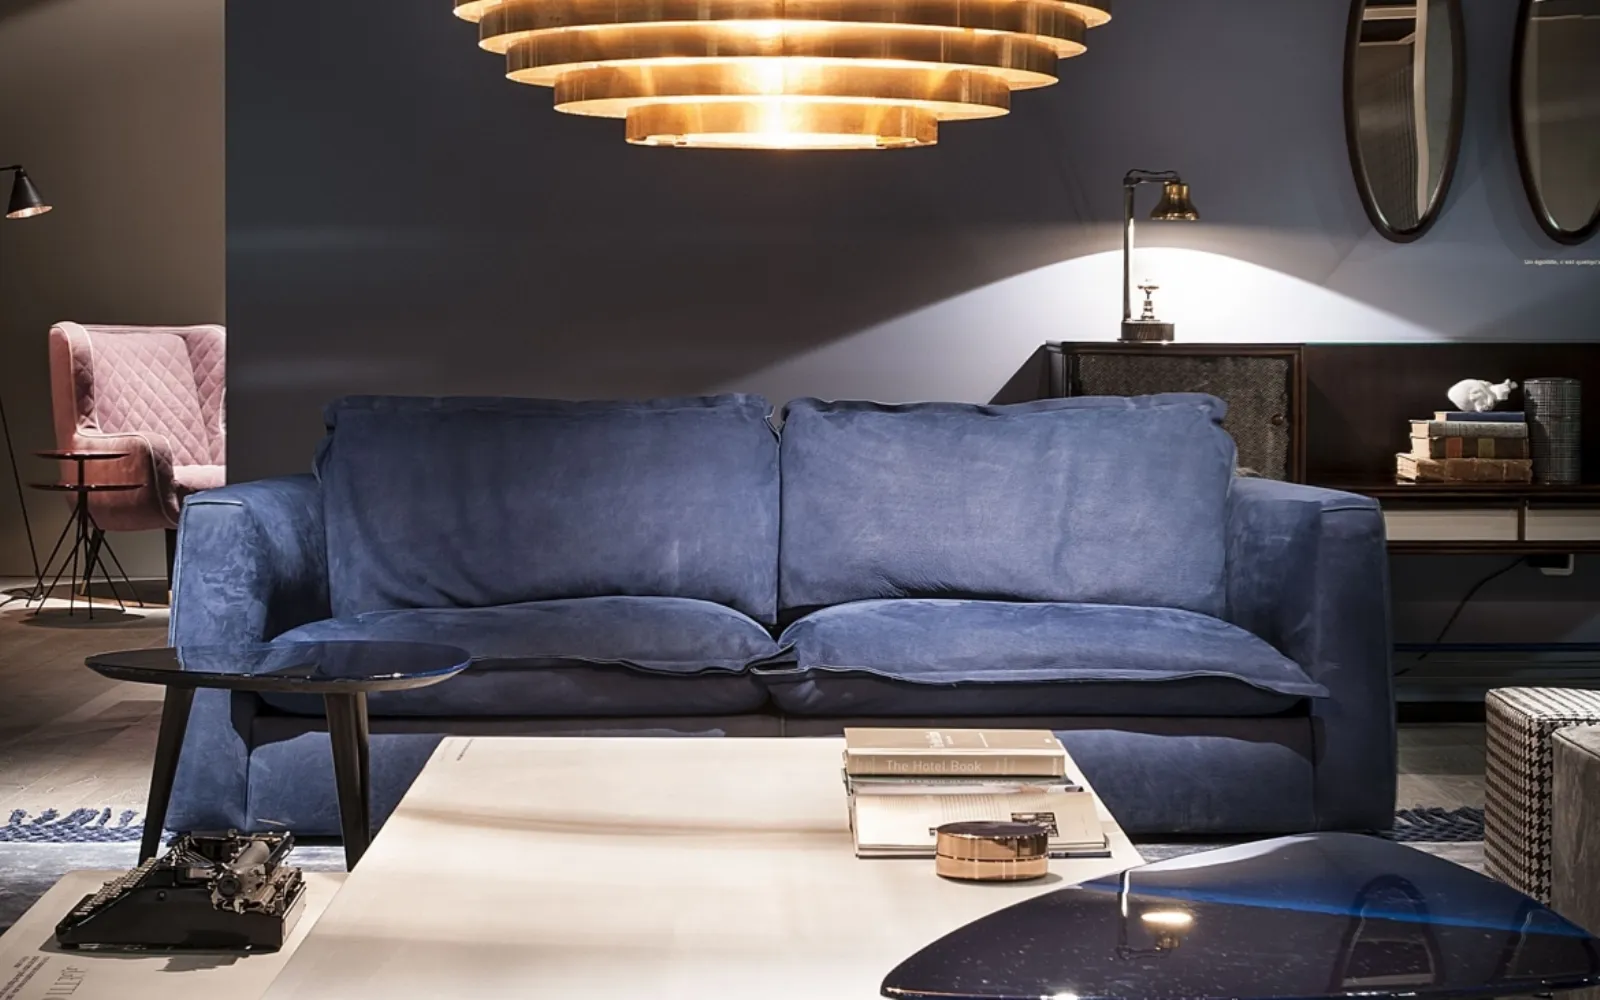 Poltrone sofa scopri le offerte di divani e poltrone for Divani baxter prezzi